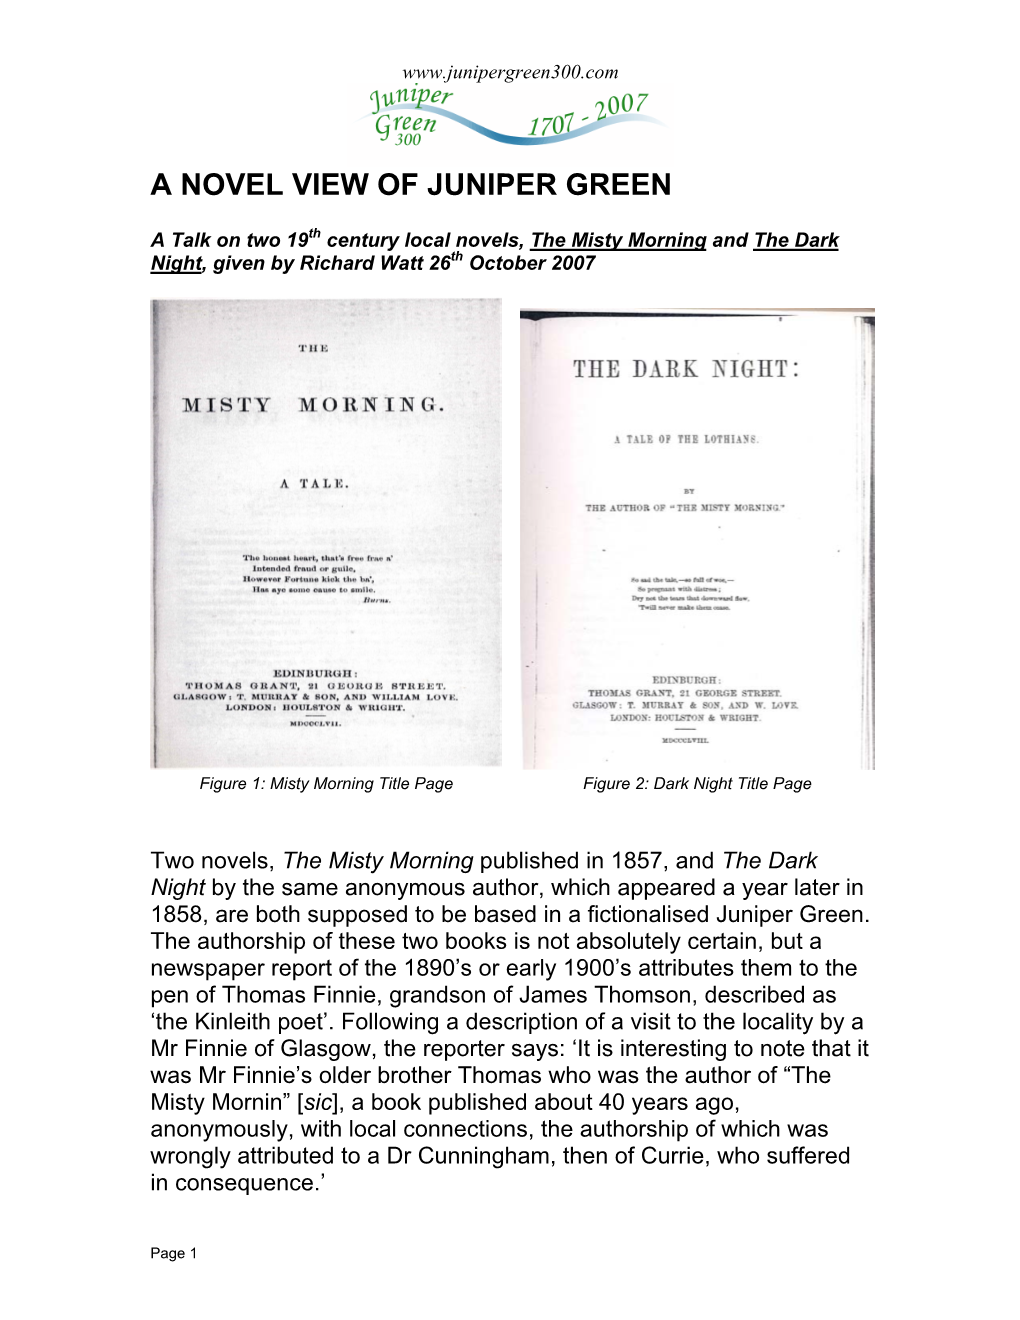 A Novel View of Juniper Green (PDF 1.9MB)